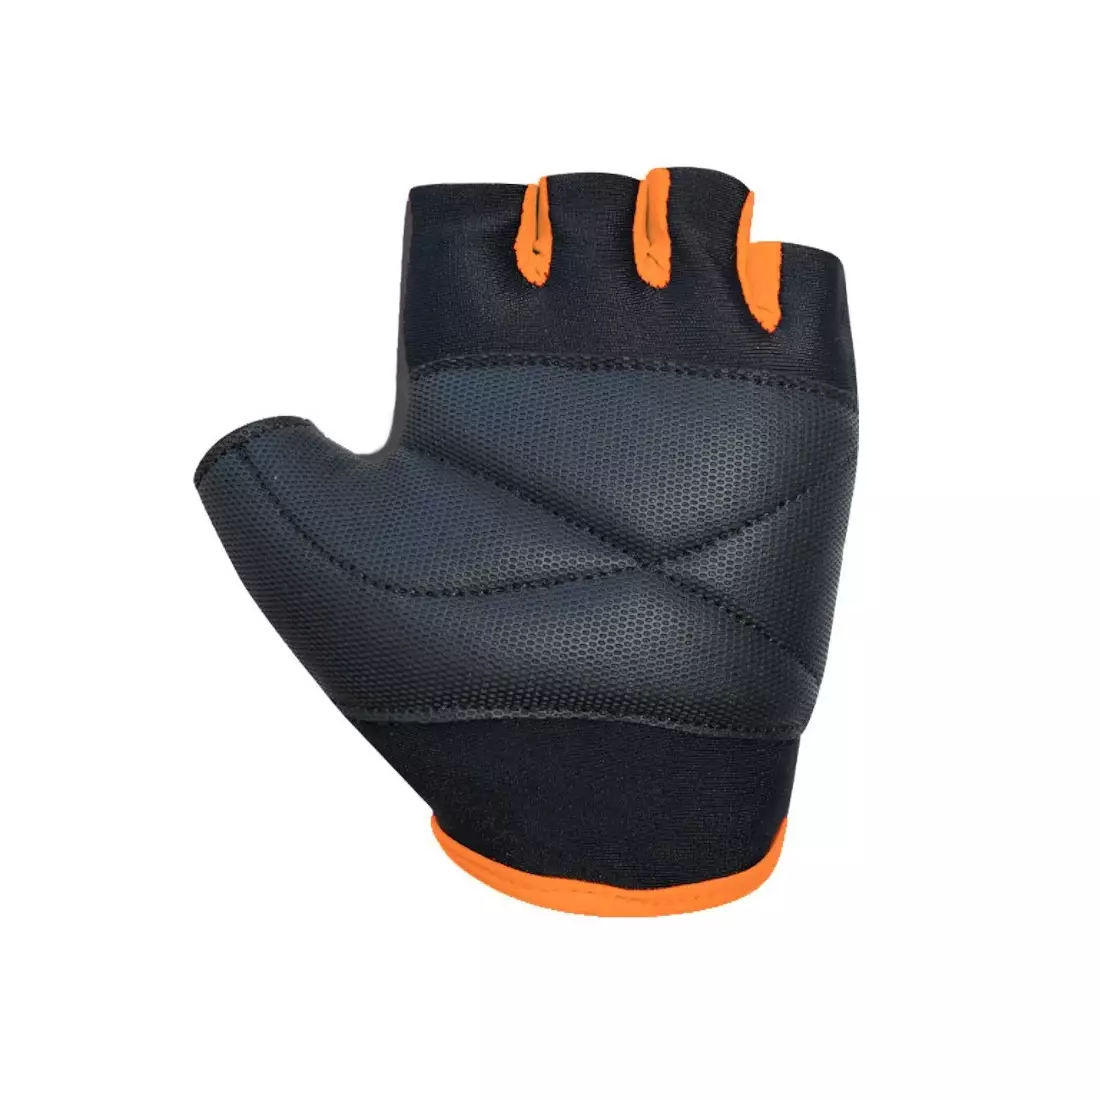 CHIBA junior gloves COOL KIDS 3050518